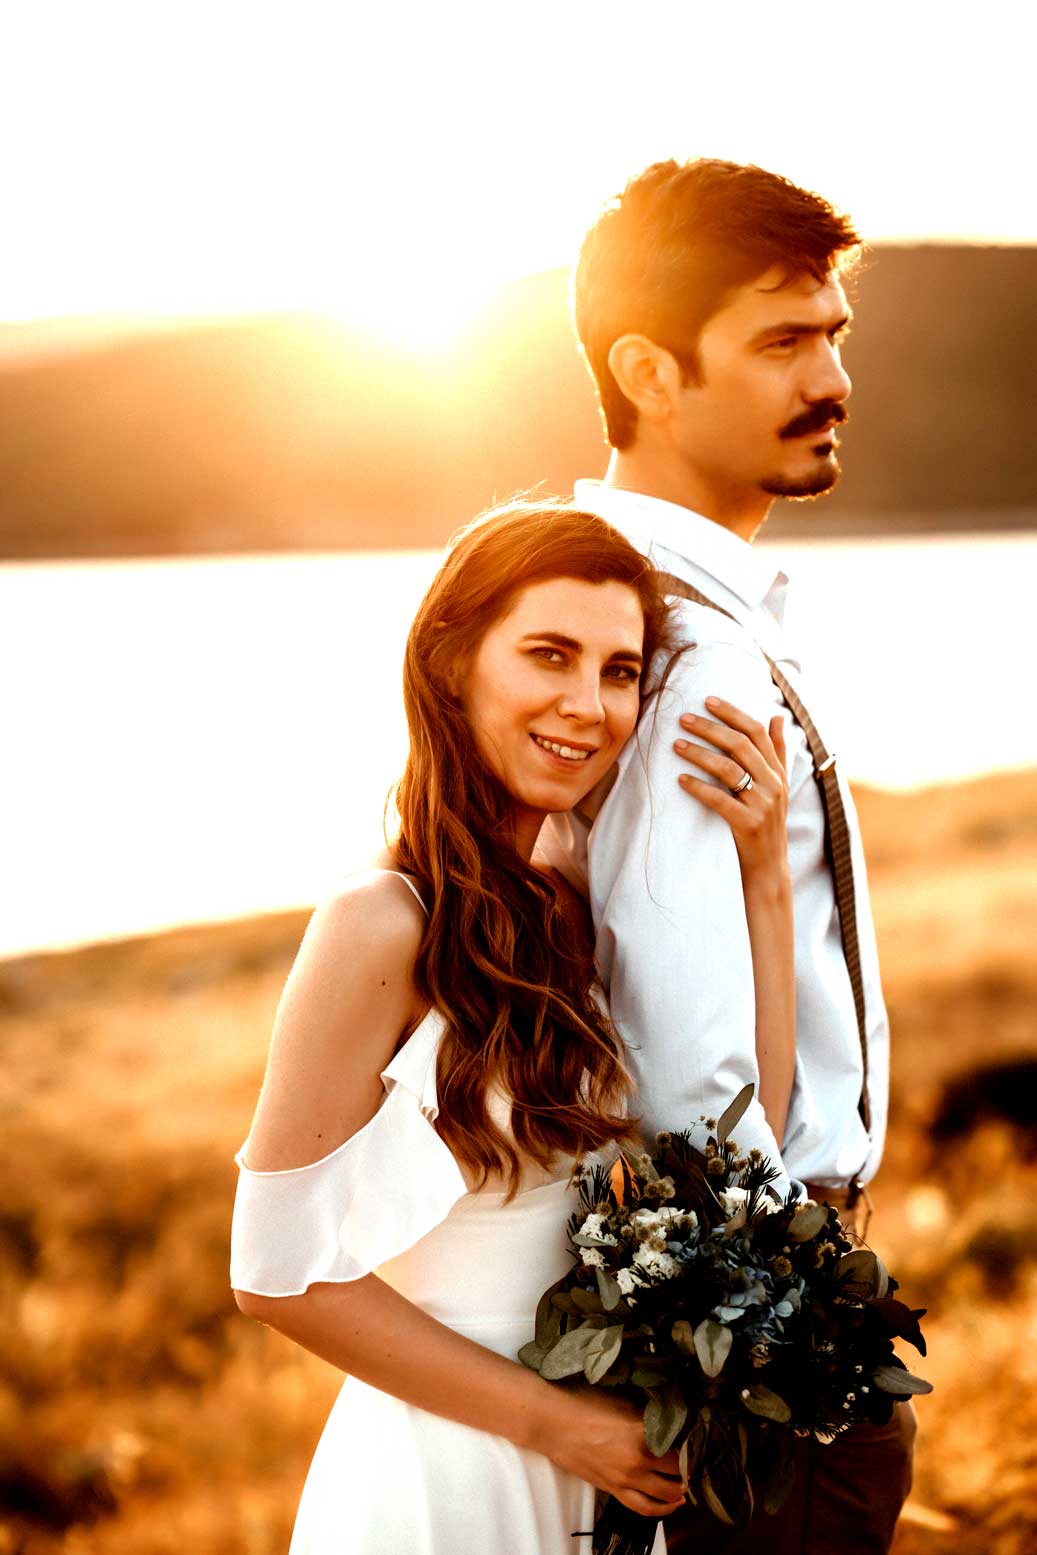 En iyi İzmir Düğün fotoğrafçıları,düğün fotoğrafçıları,düğün fotoğrafçısı Volkan Aktoprak,düğün dış çekim fotoğrafçıları, izmir düğün fotoğrafları